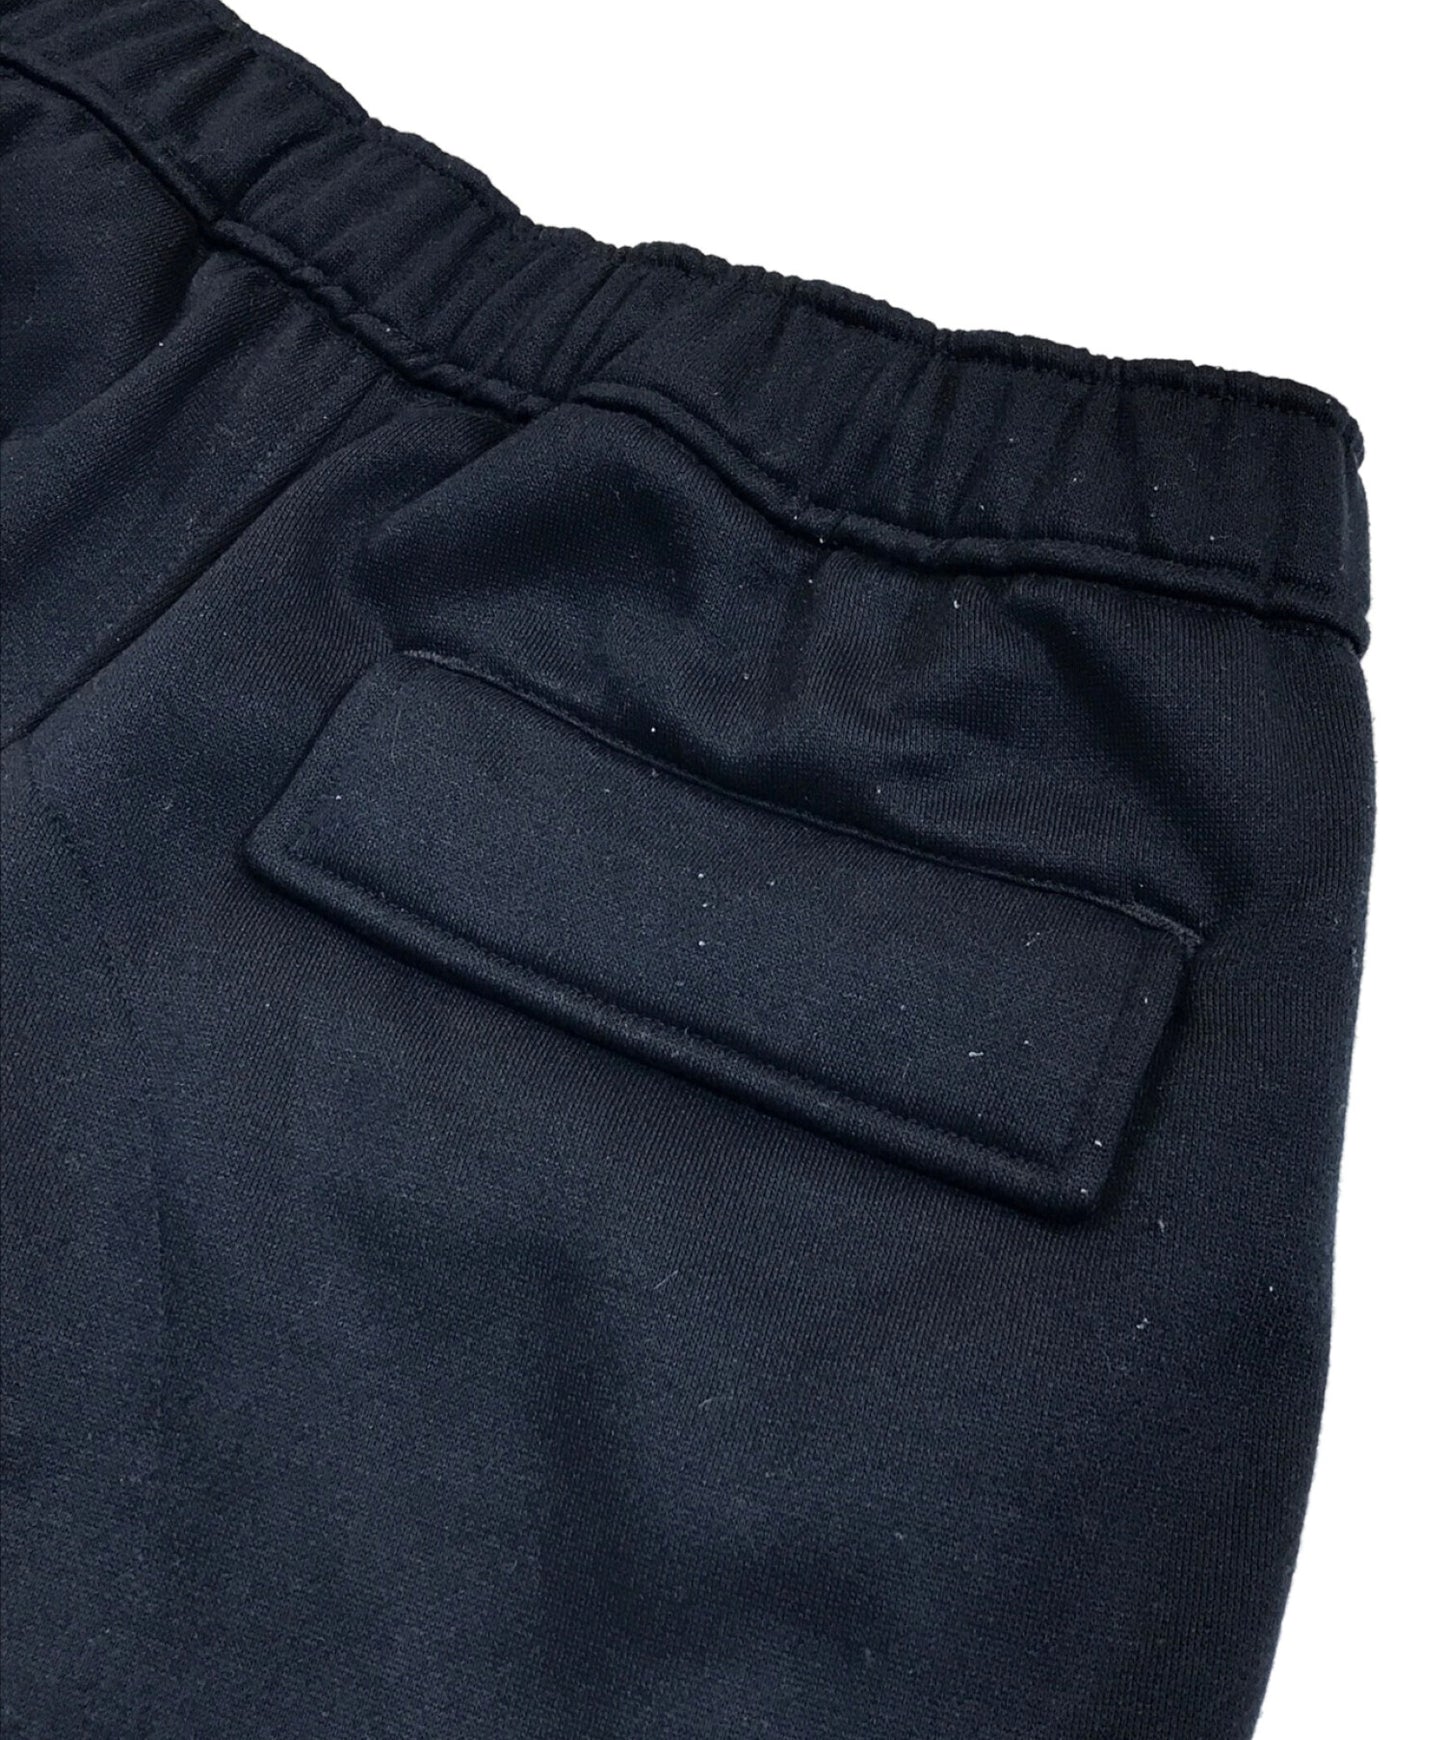 Daiwa Pier39 Tech Sweat 6 Pocket Pants BP-53022W